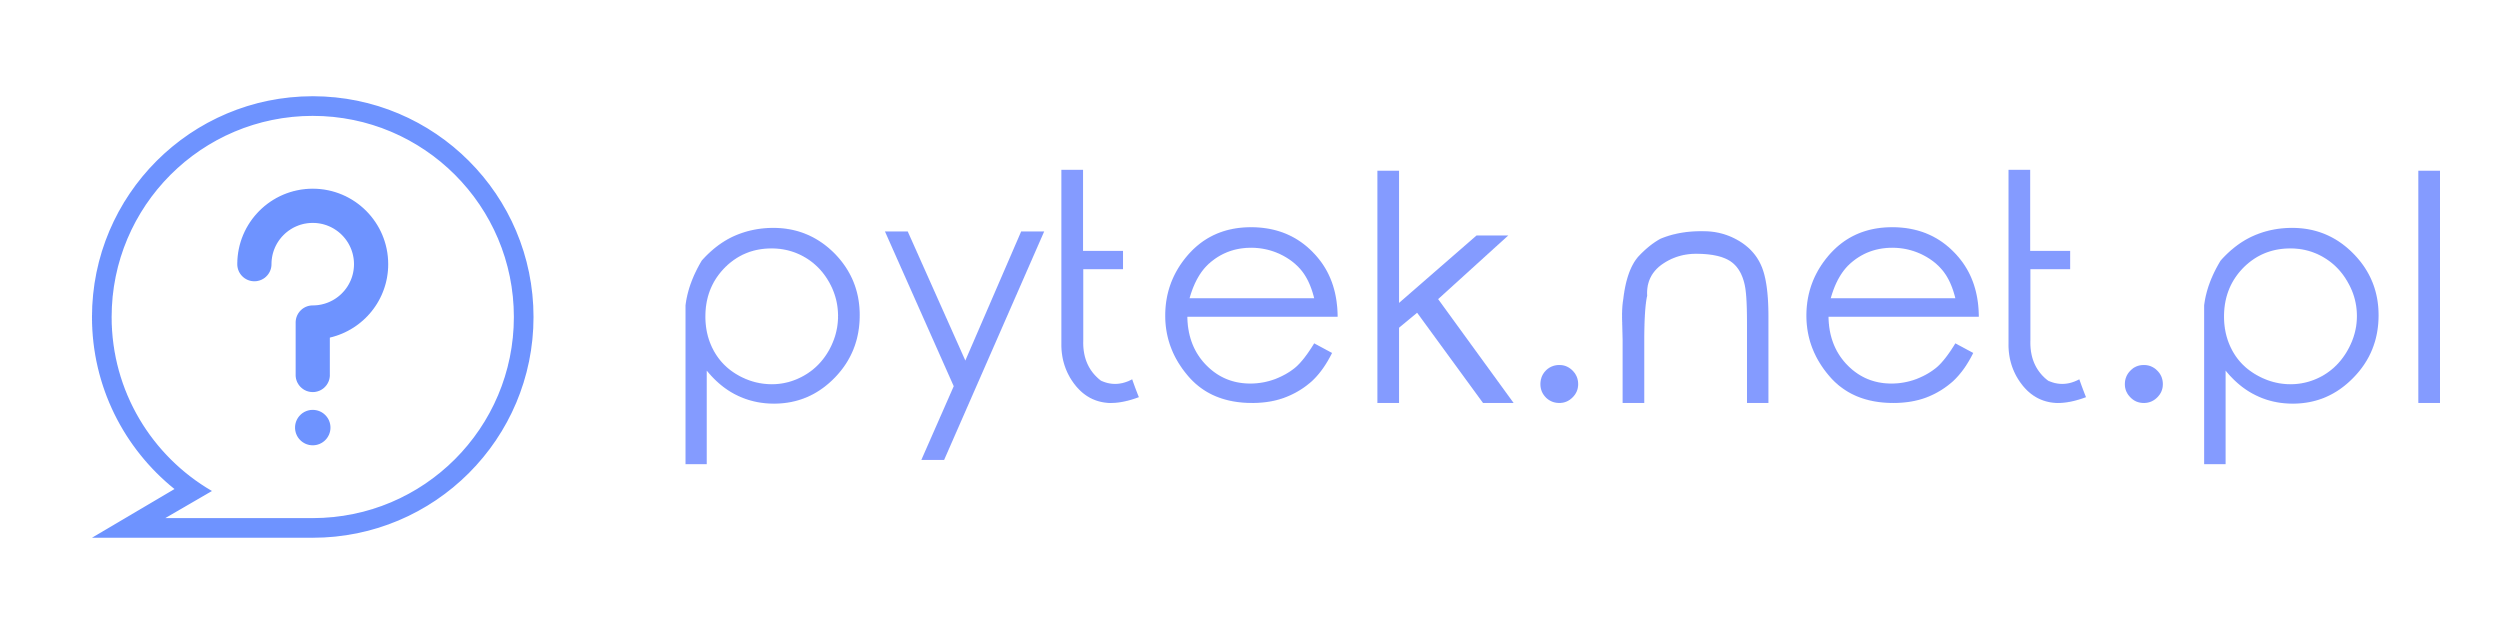 Pytek.net.pl